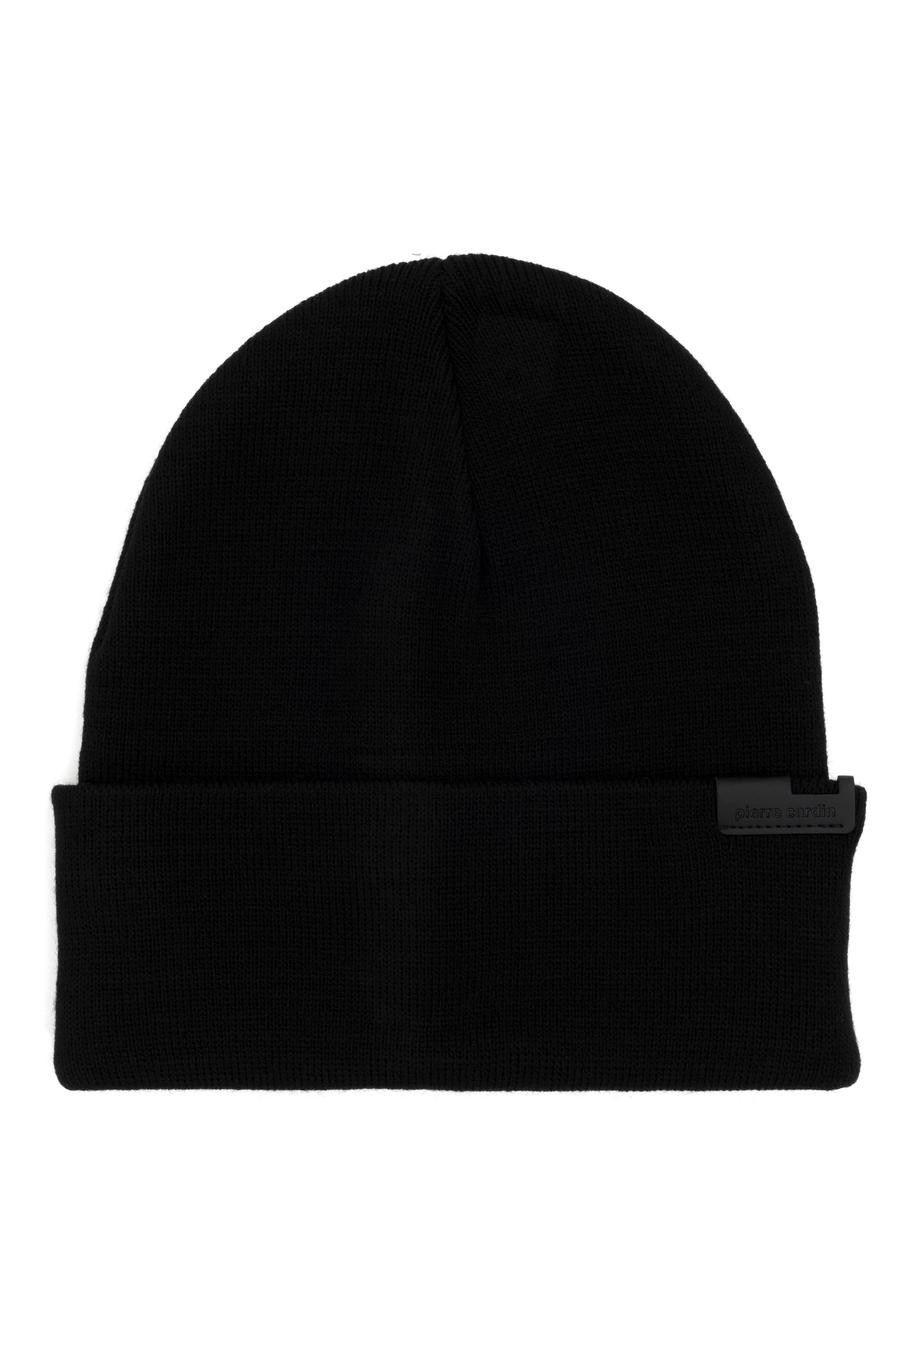 ست کلاه شال گردن و دستکش  سیاه  استاندارد  مردانه  پیرکاردین